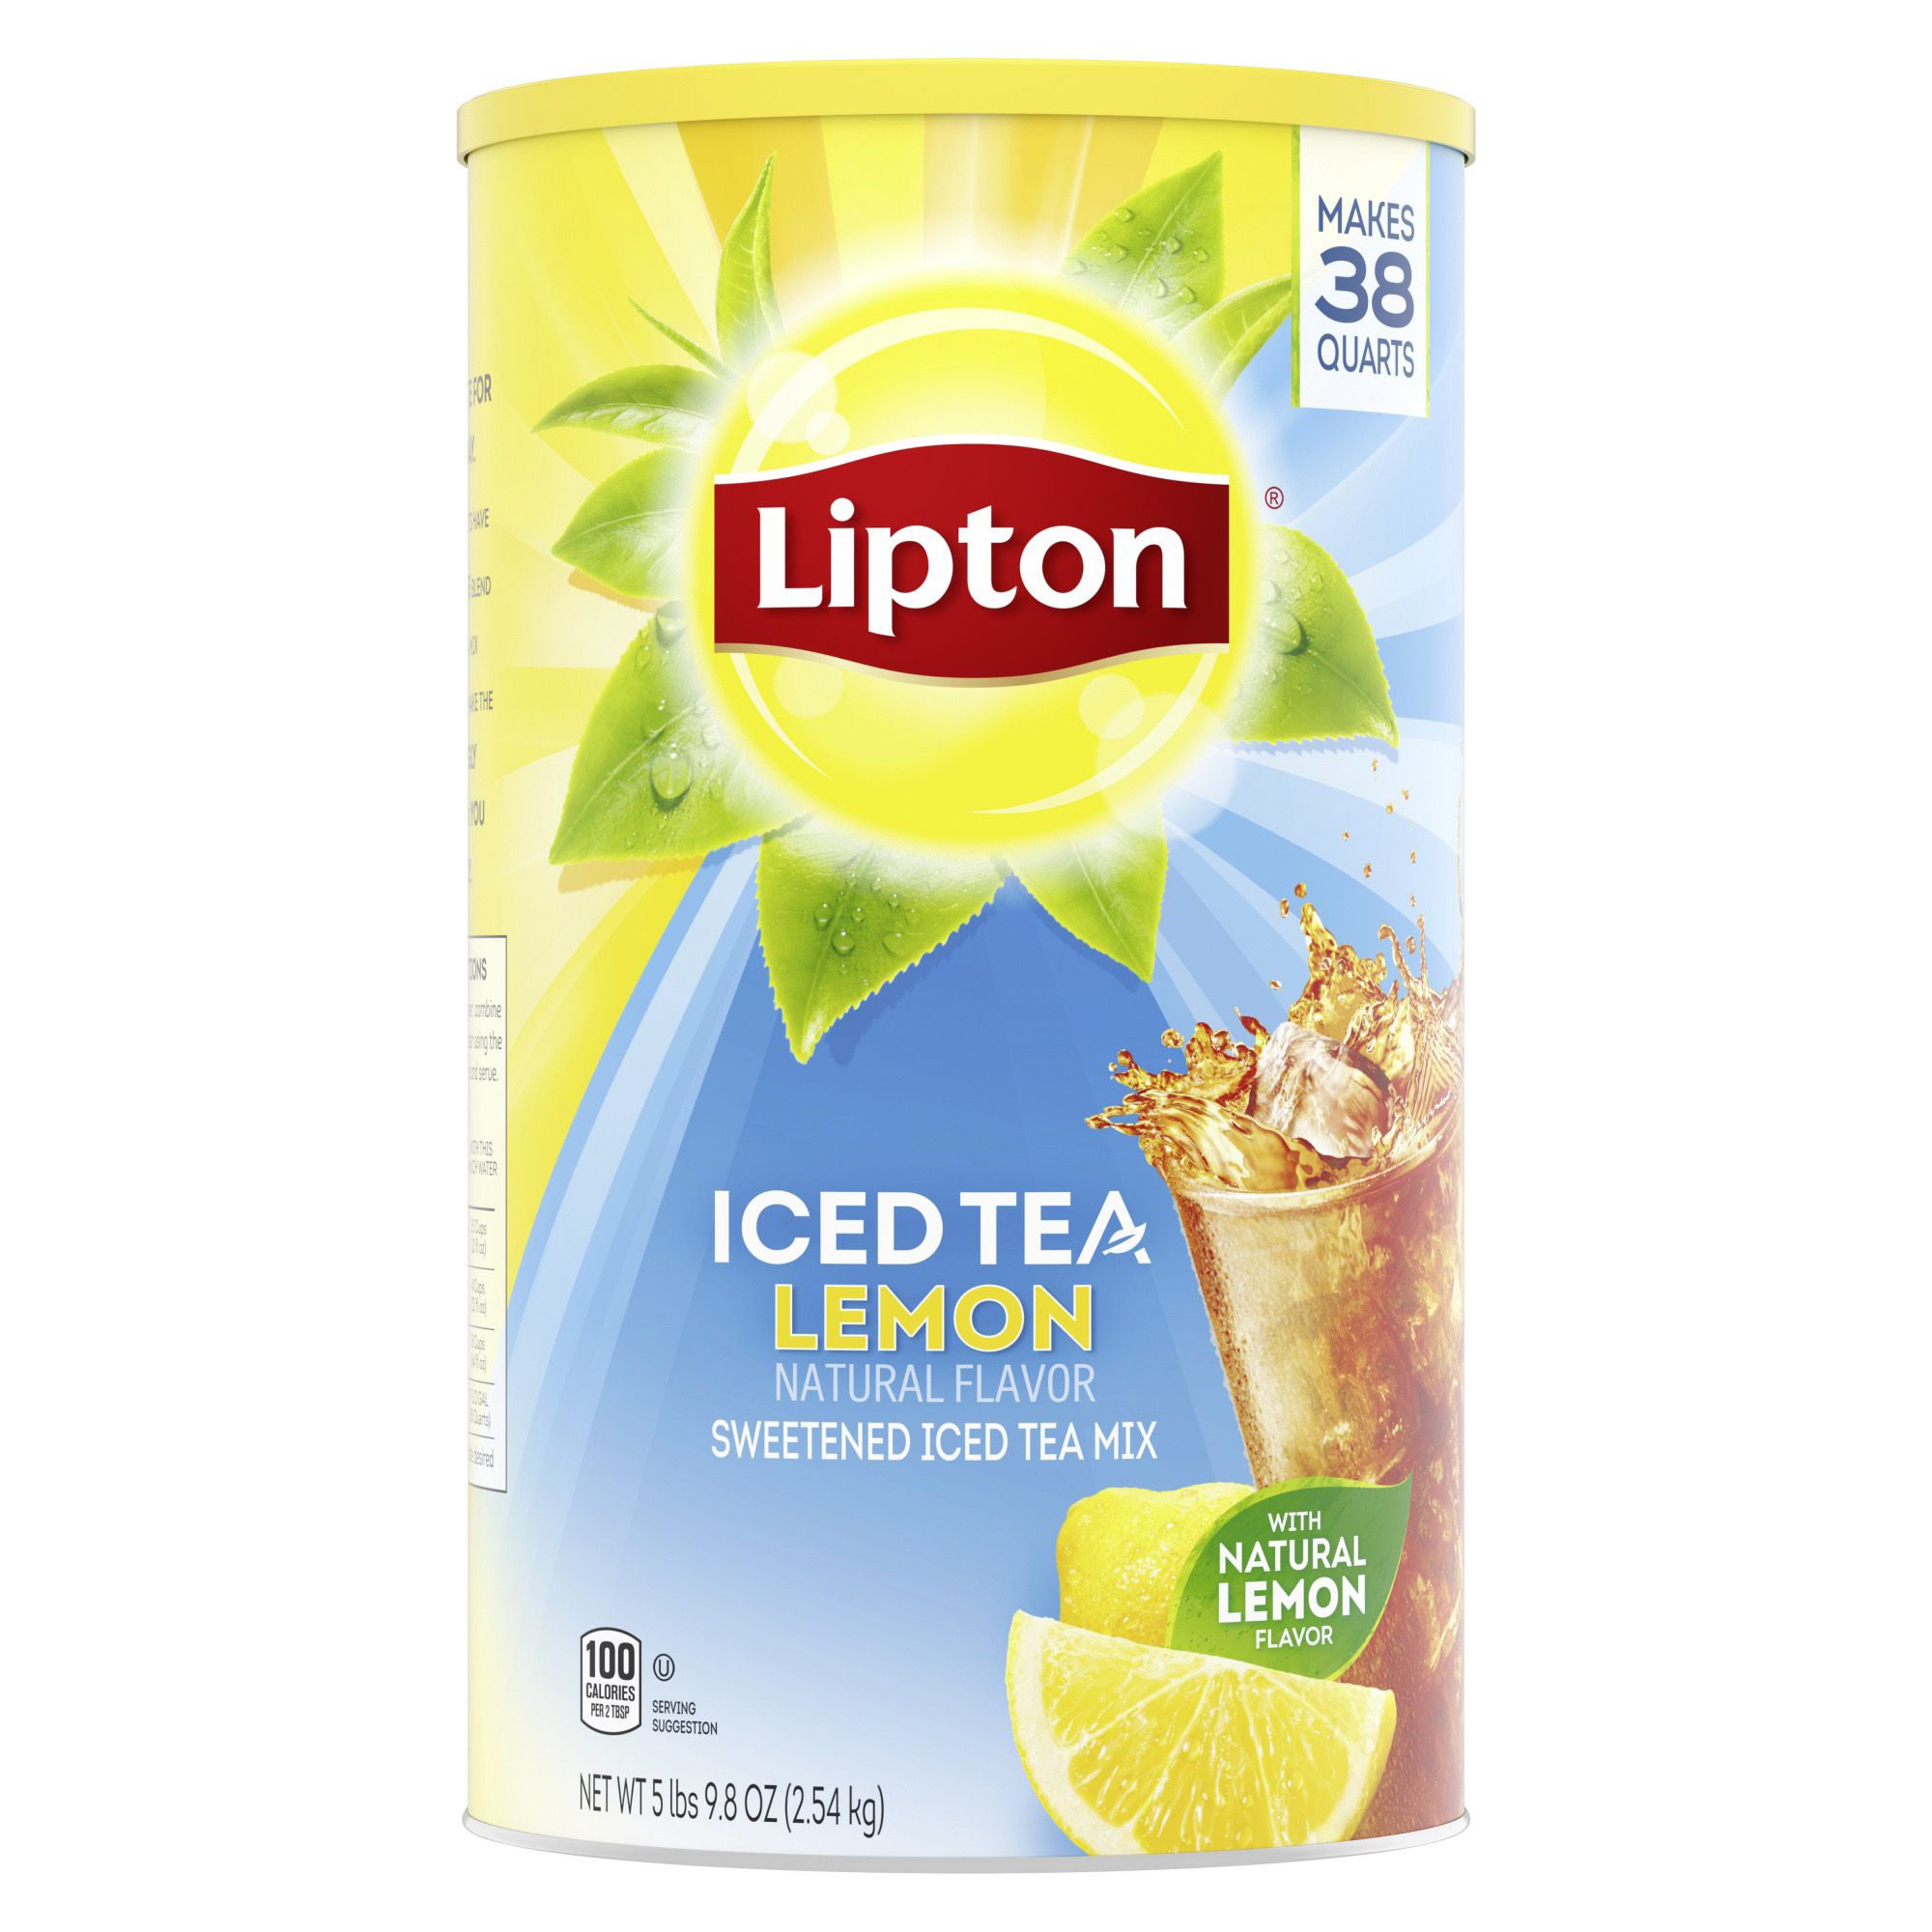 lemon iced tea